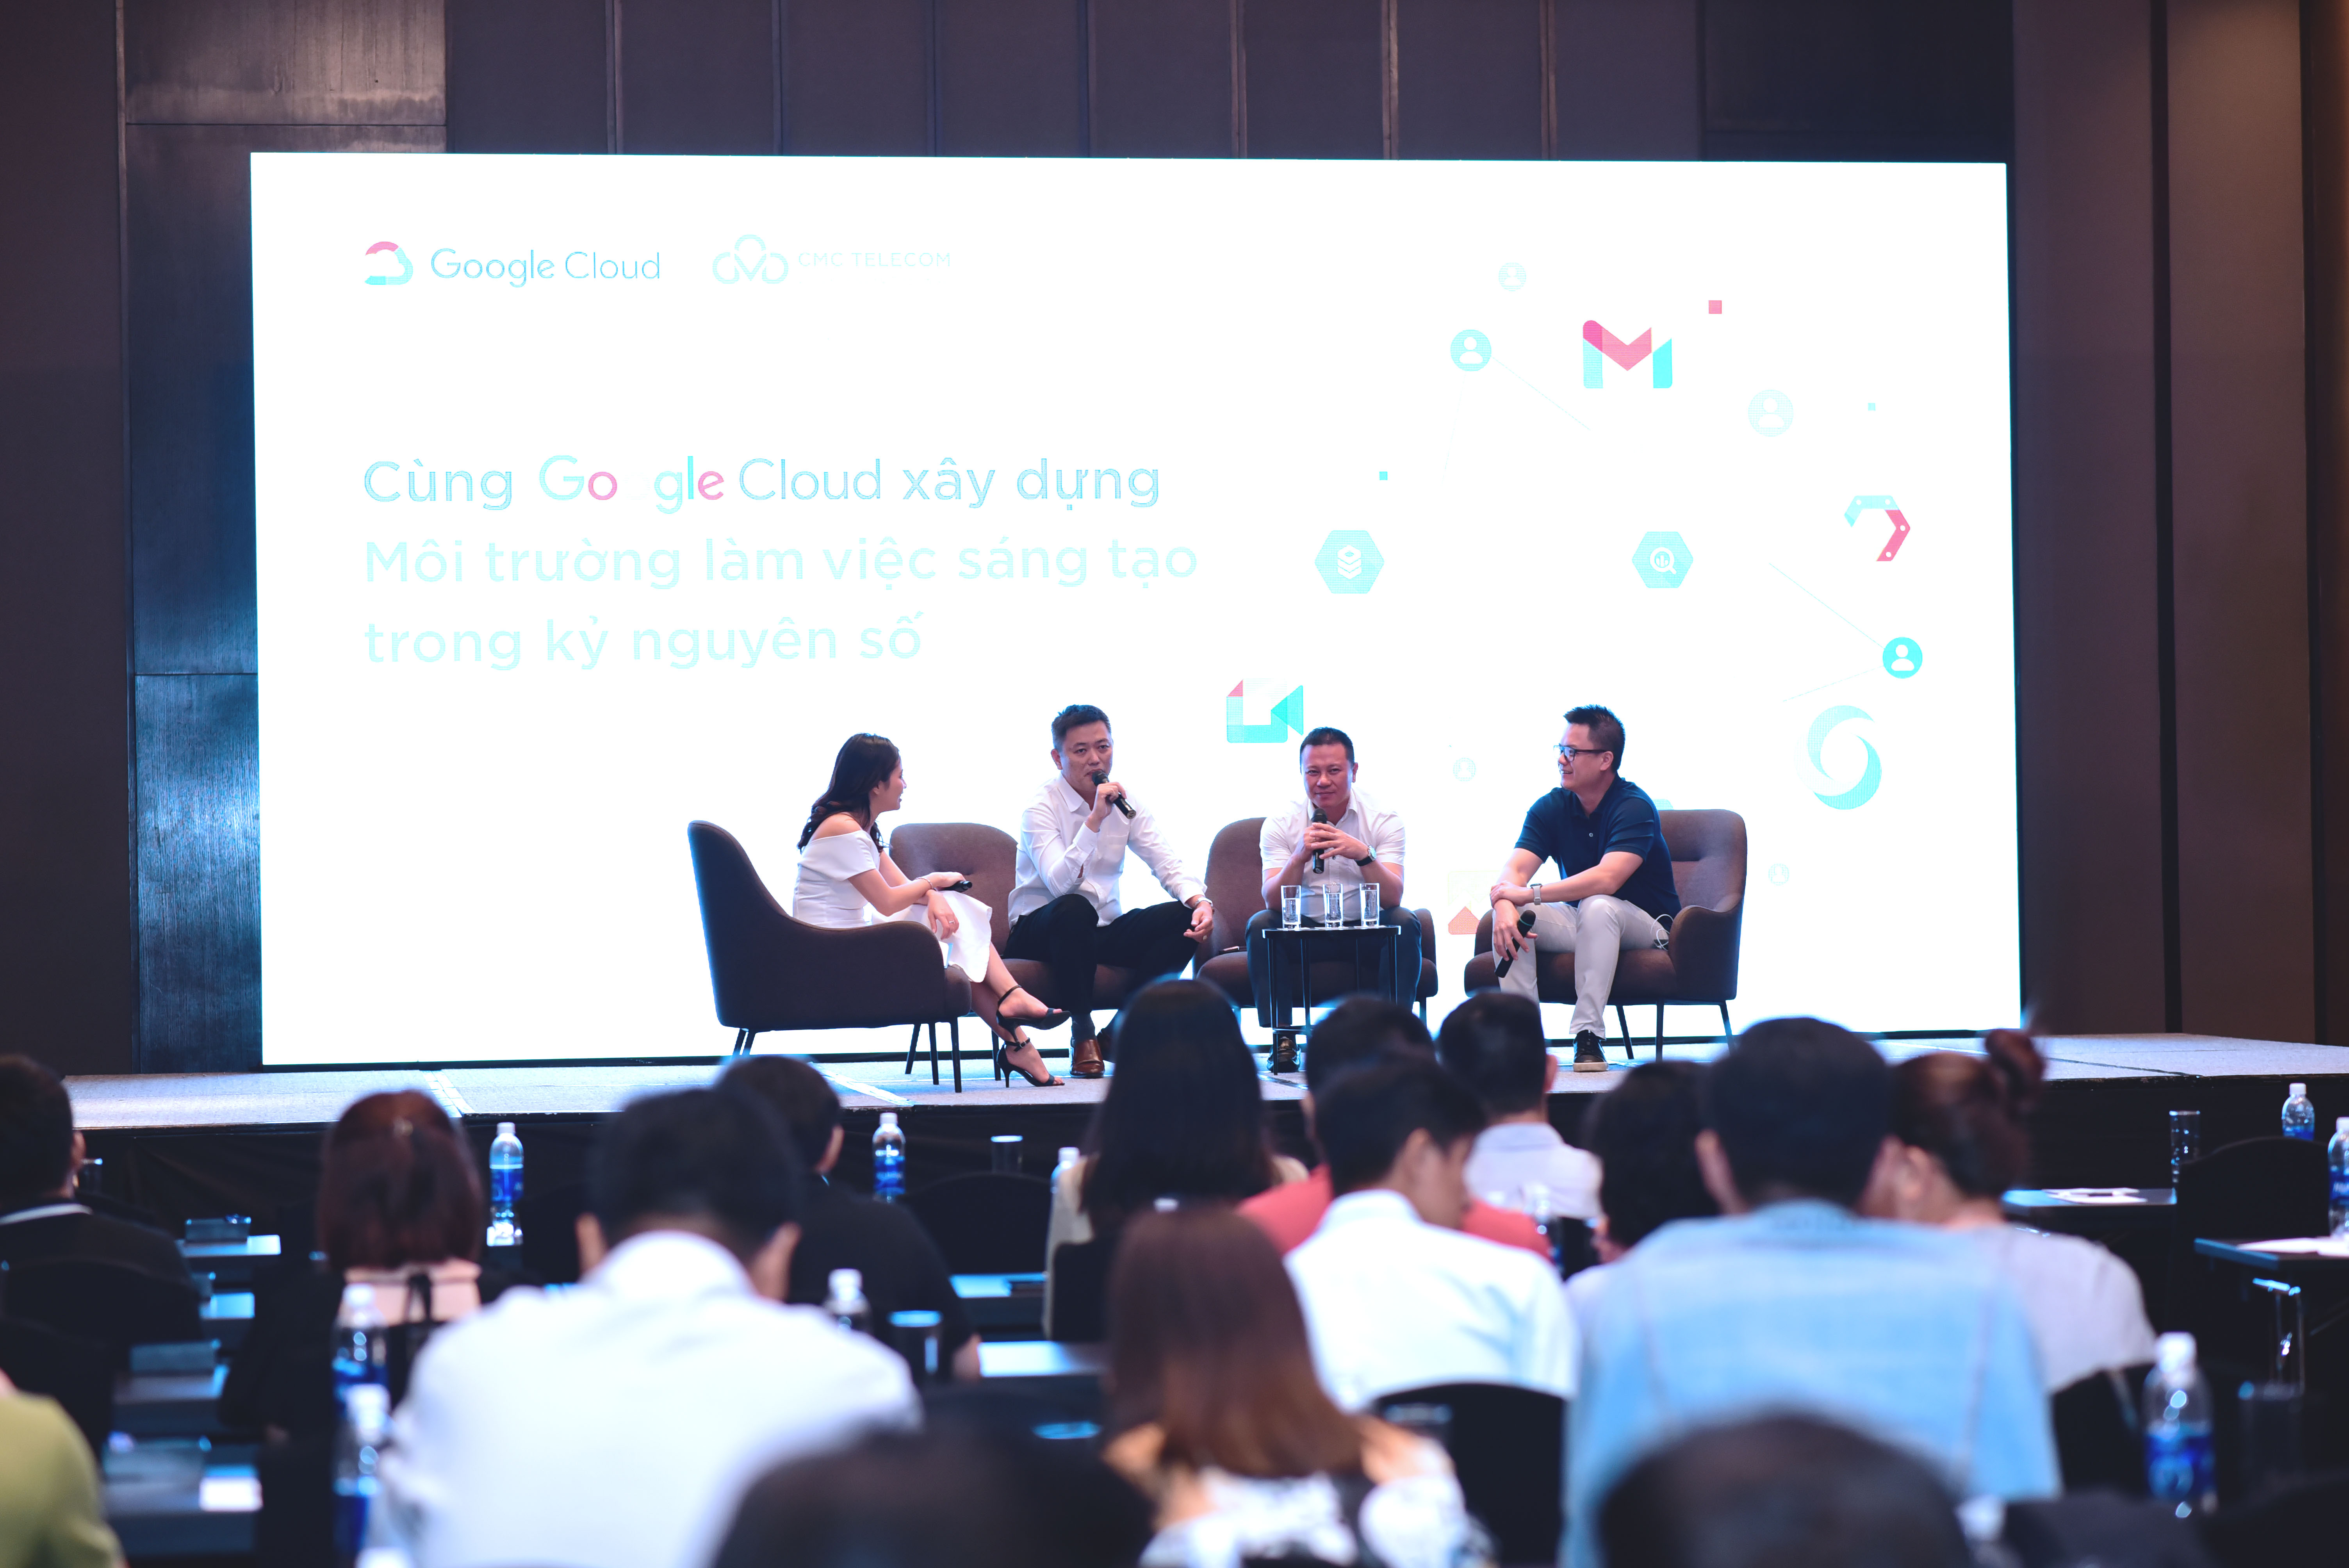 Ông Thịnh Phạm chia sẻ về phép thử đầu tiên trong lộ trình chuyển đổi số với Google Workspace nhằm số hóa dữ liệu kinh doanh - tương tự như chính cuộc cách mạng số hóa nơi làm việc đã diễn ra tại Singapore vào 2018